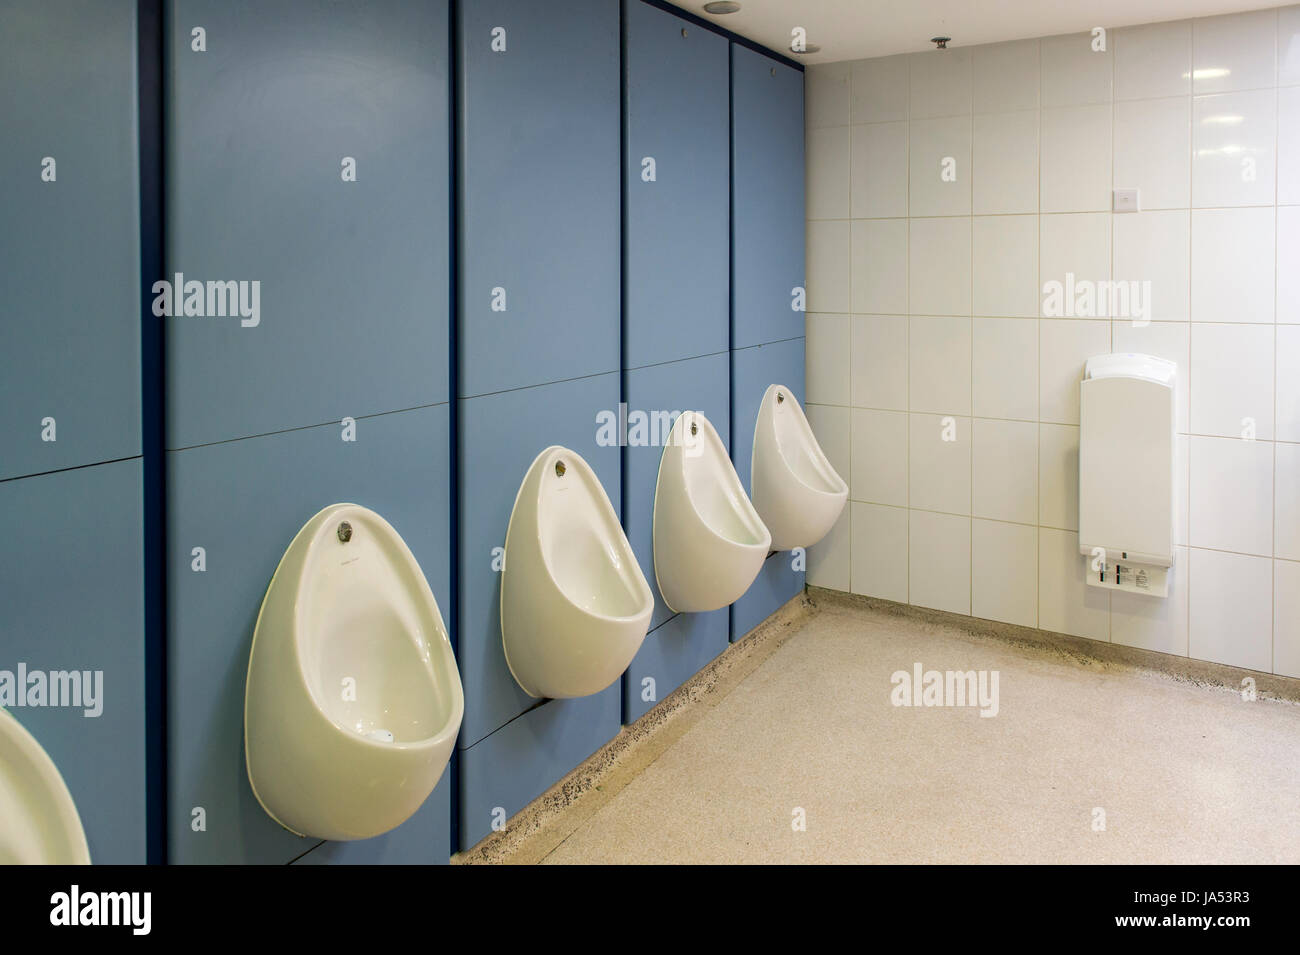 All'interno di una toilette per uomini in un centro commerciale con orinali e un asciugatore a mano. Foto Stock